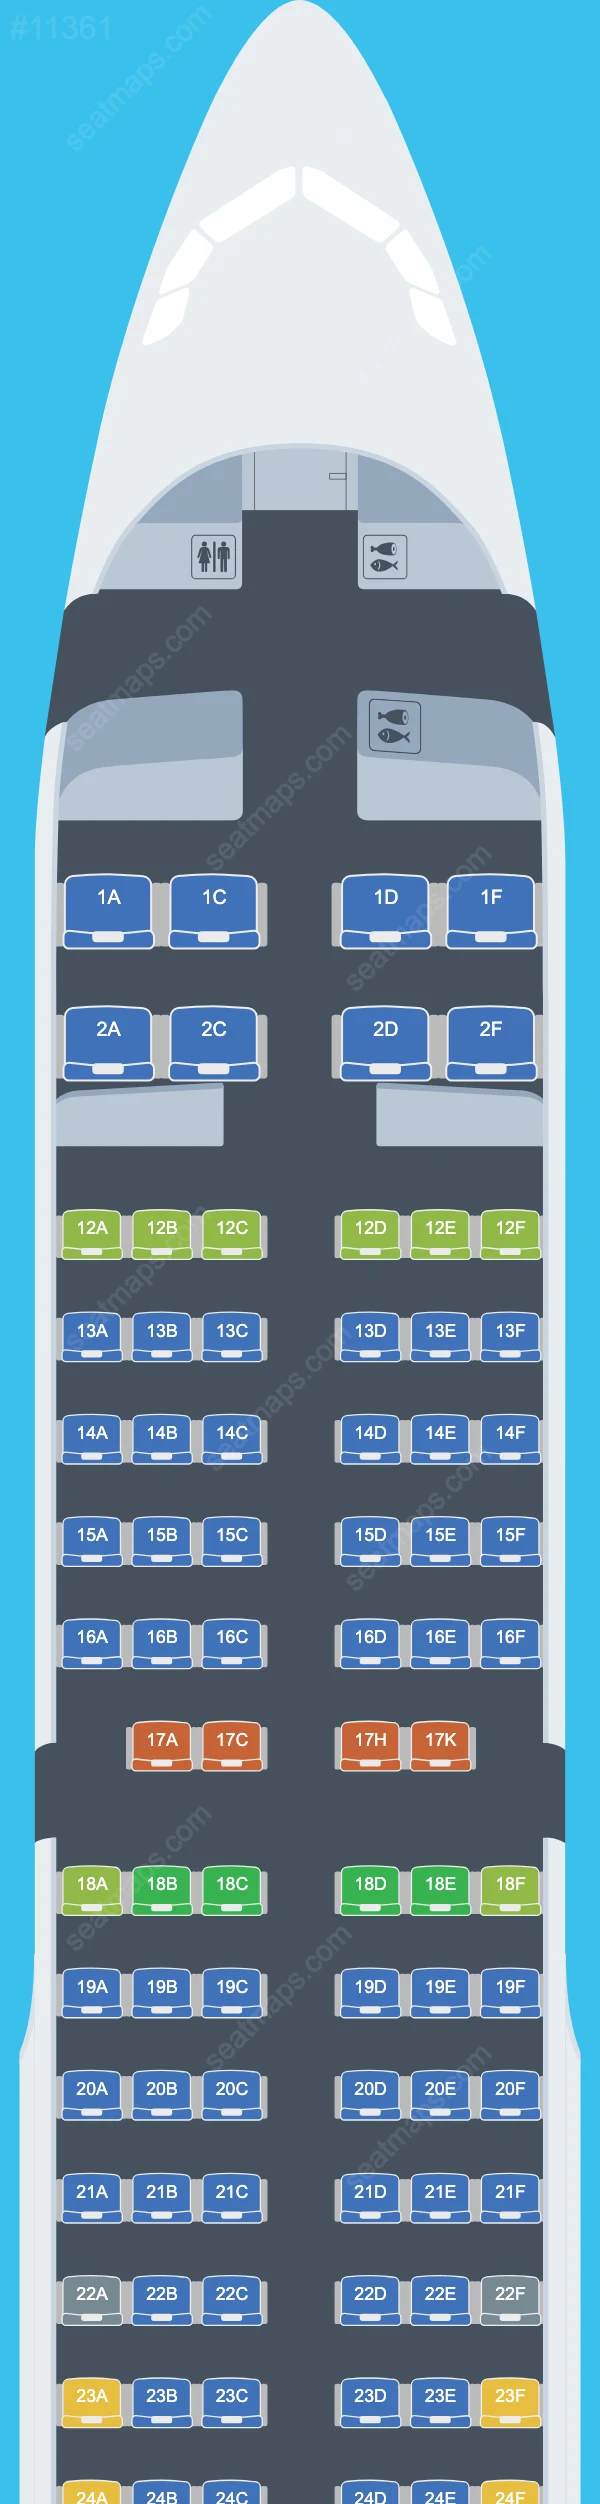 Air Canada Airbus A321 Seat Maps A321-200 V.4